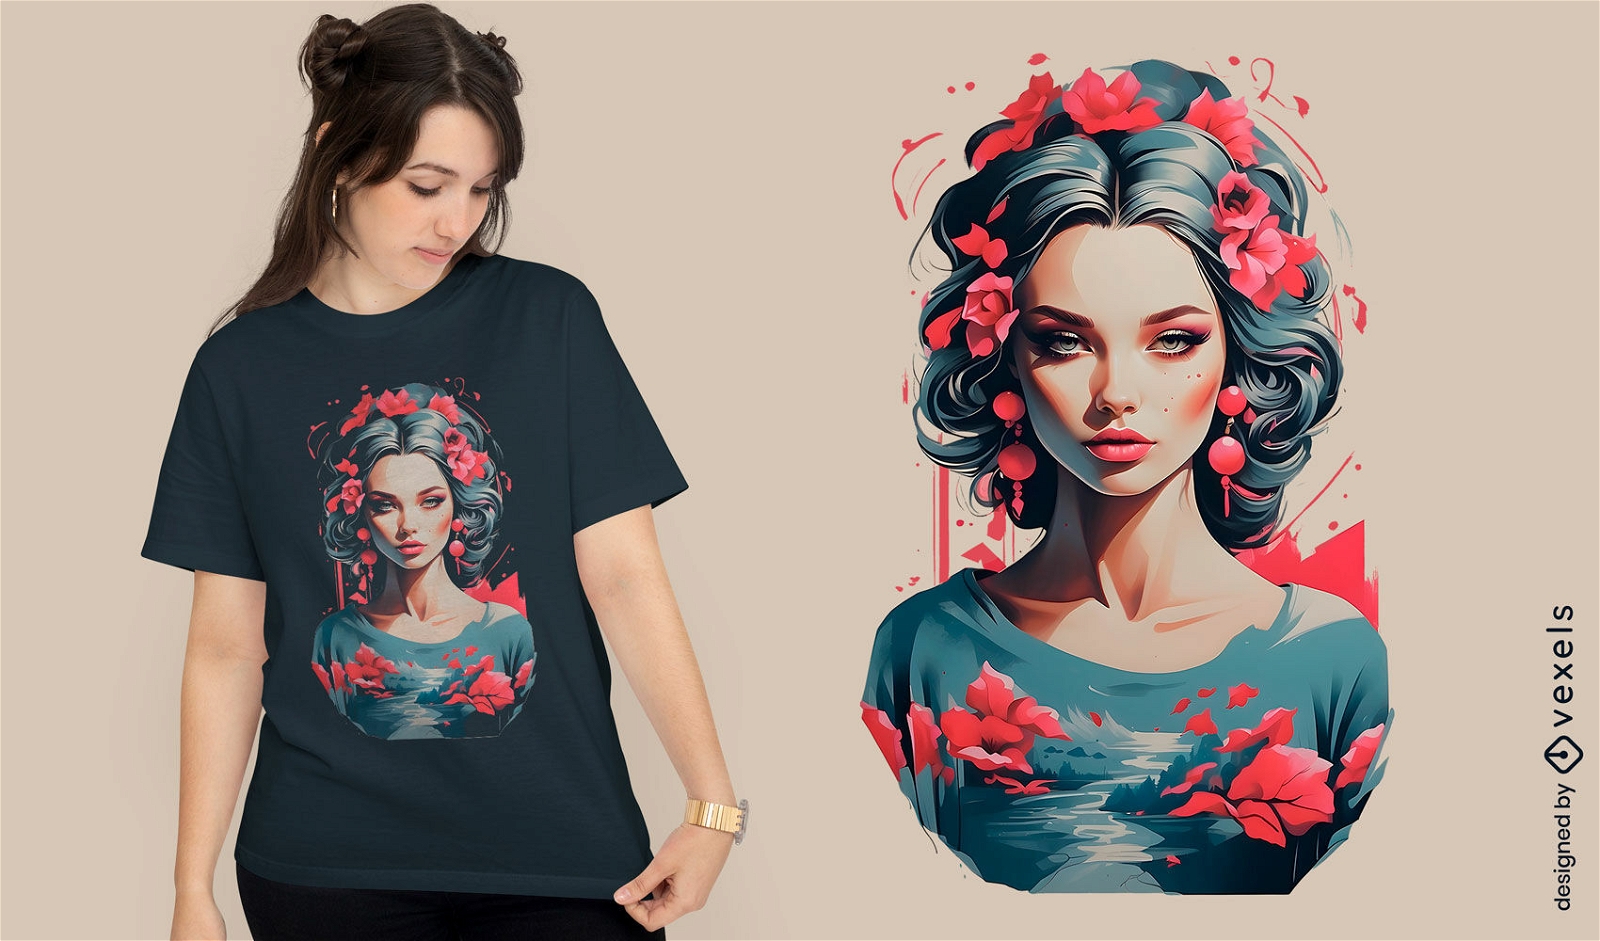 Frauen-T-Shirt-Design mit Blumenfluss